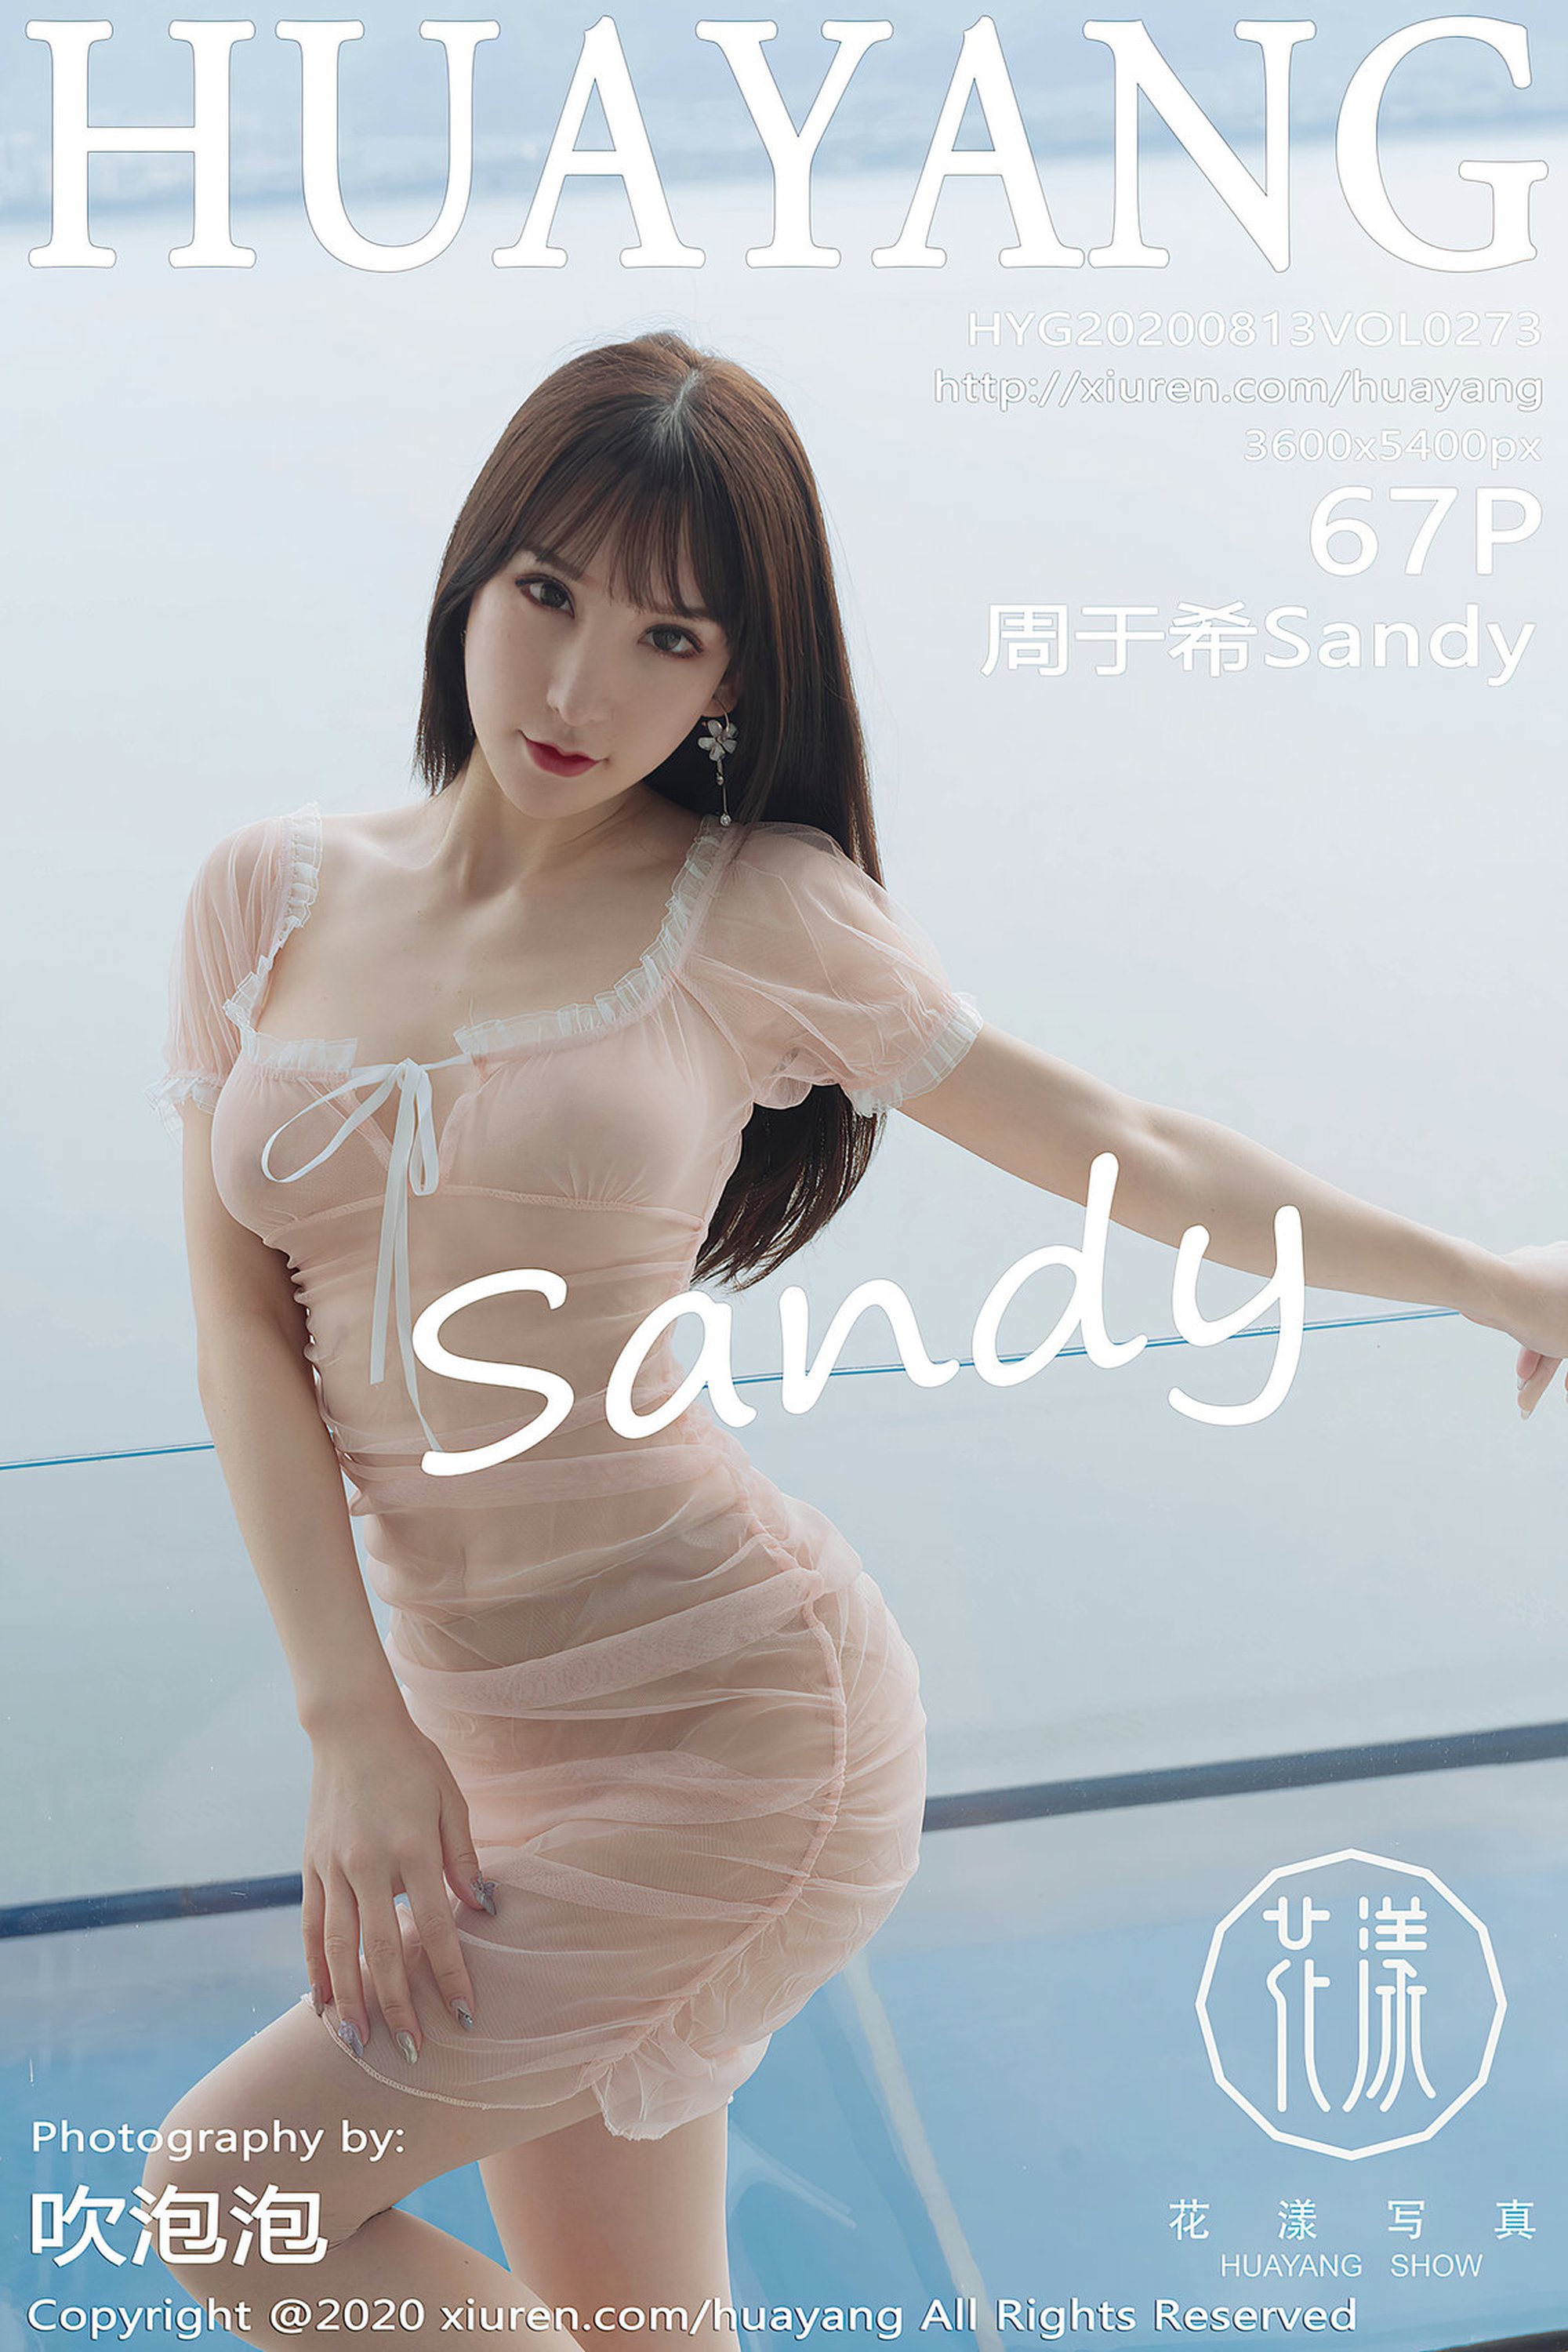 【HuaYang花漾系列】2020.08.13 Vol.273 周于希Sandy 完整版無水印寫真【68P】 - 貼圖 - 絲襪美腿 -